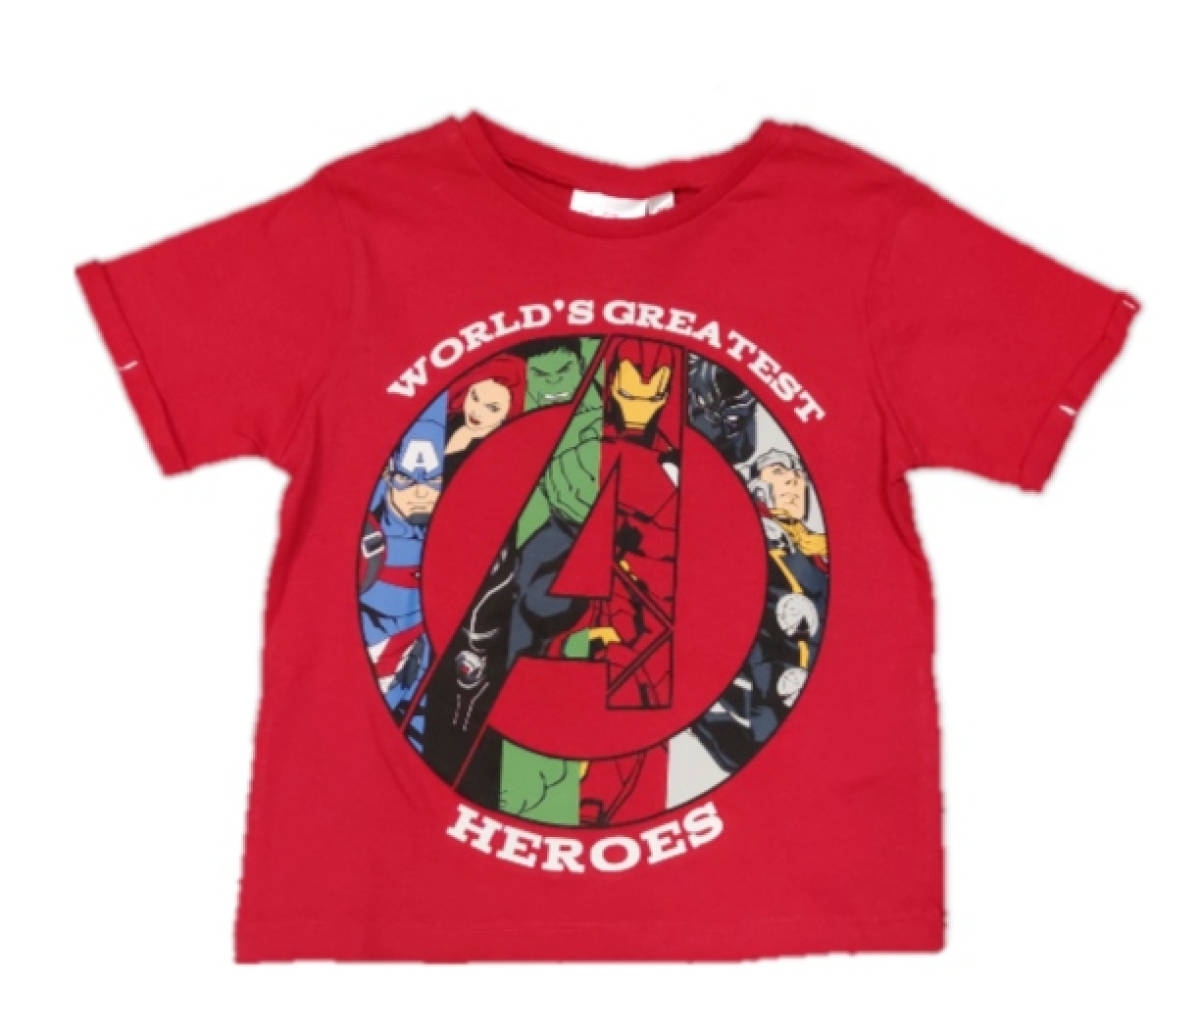 Avengers T-Shirt in rot mit dem Schirftzug "Worlds Greatest Heroes" | MARVEL